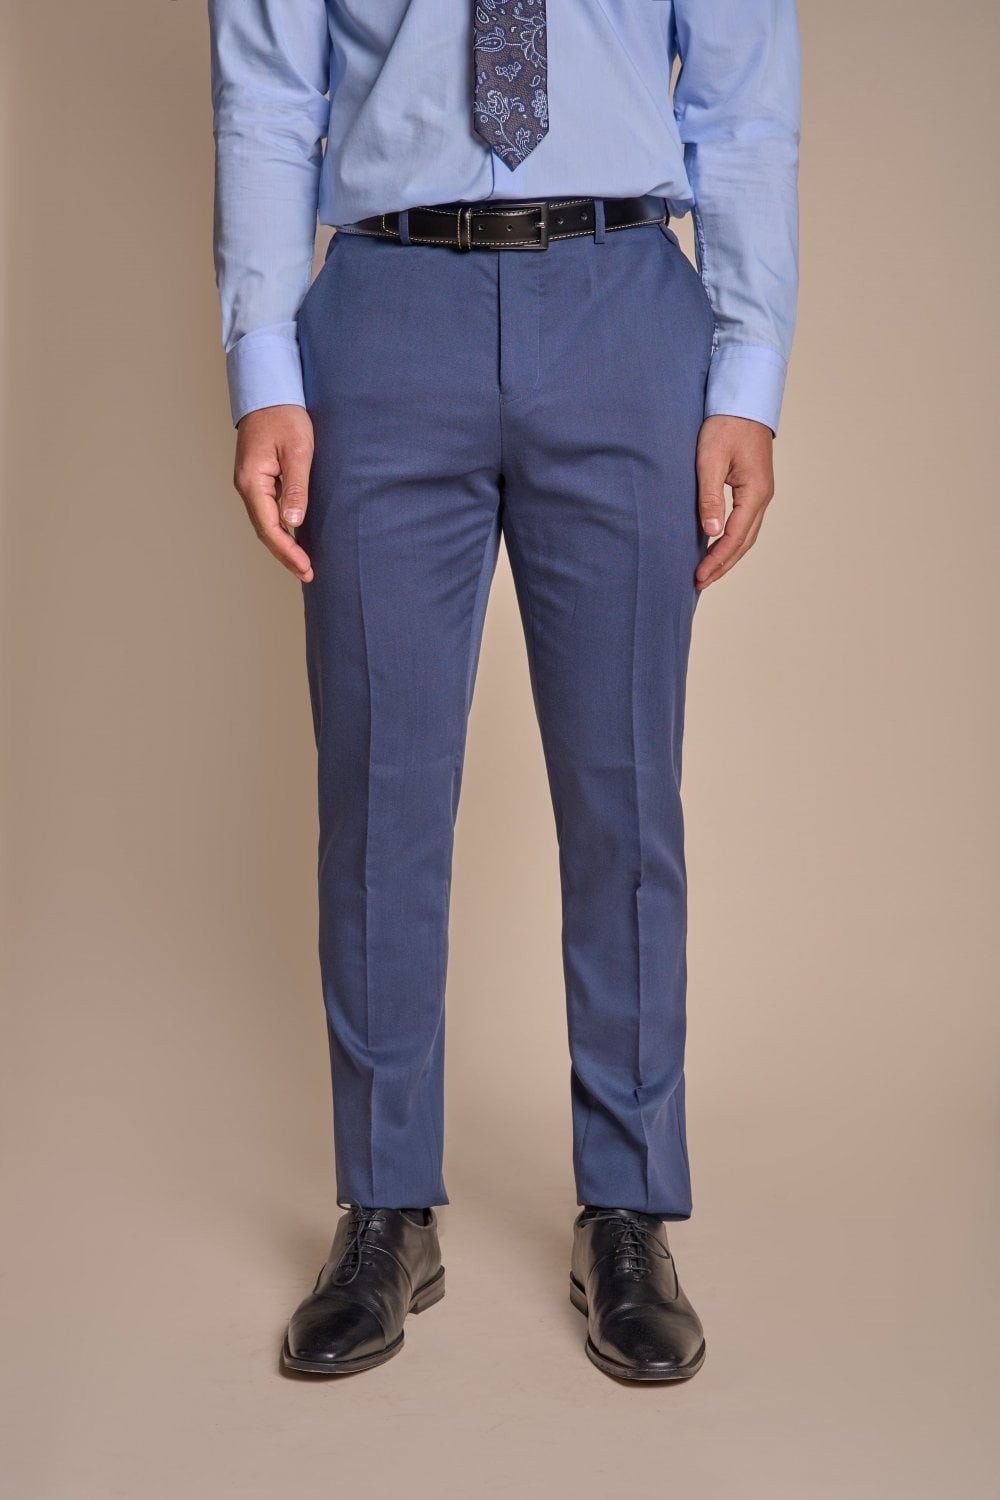 Men's Slim Fit Blue Formal Pants - SPECTER